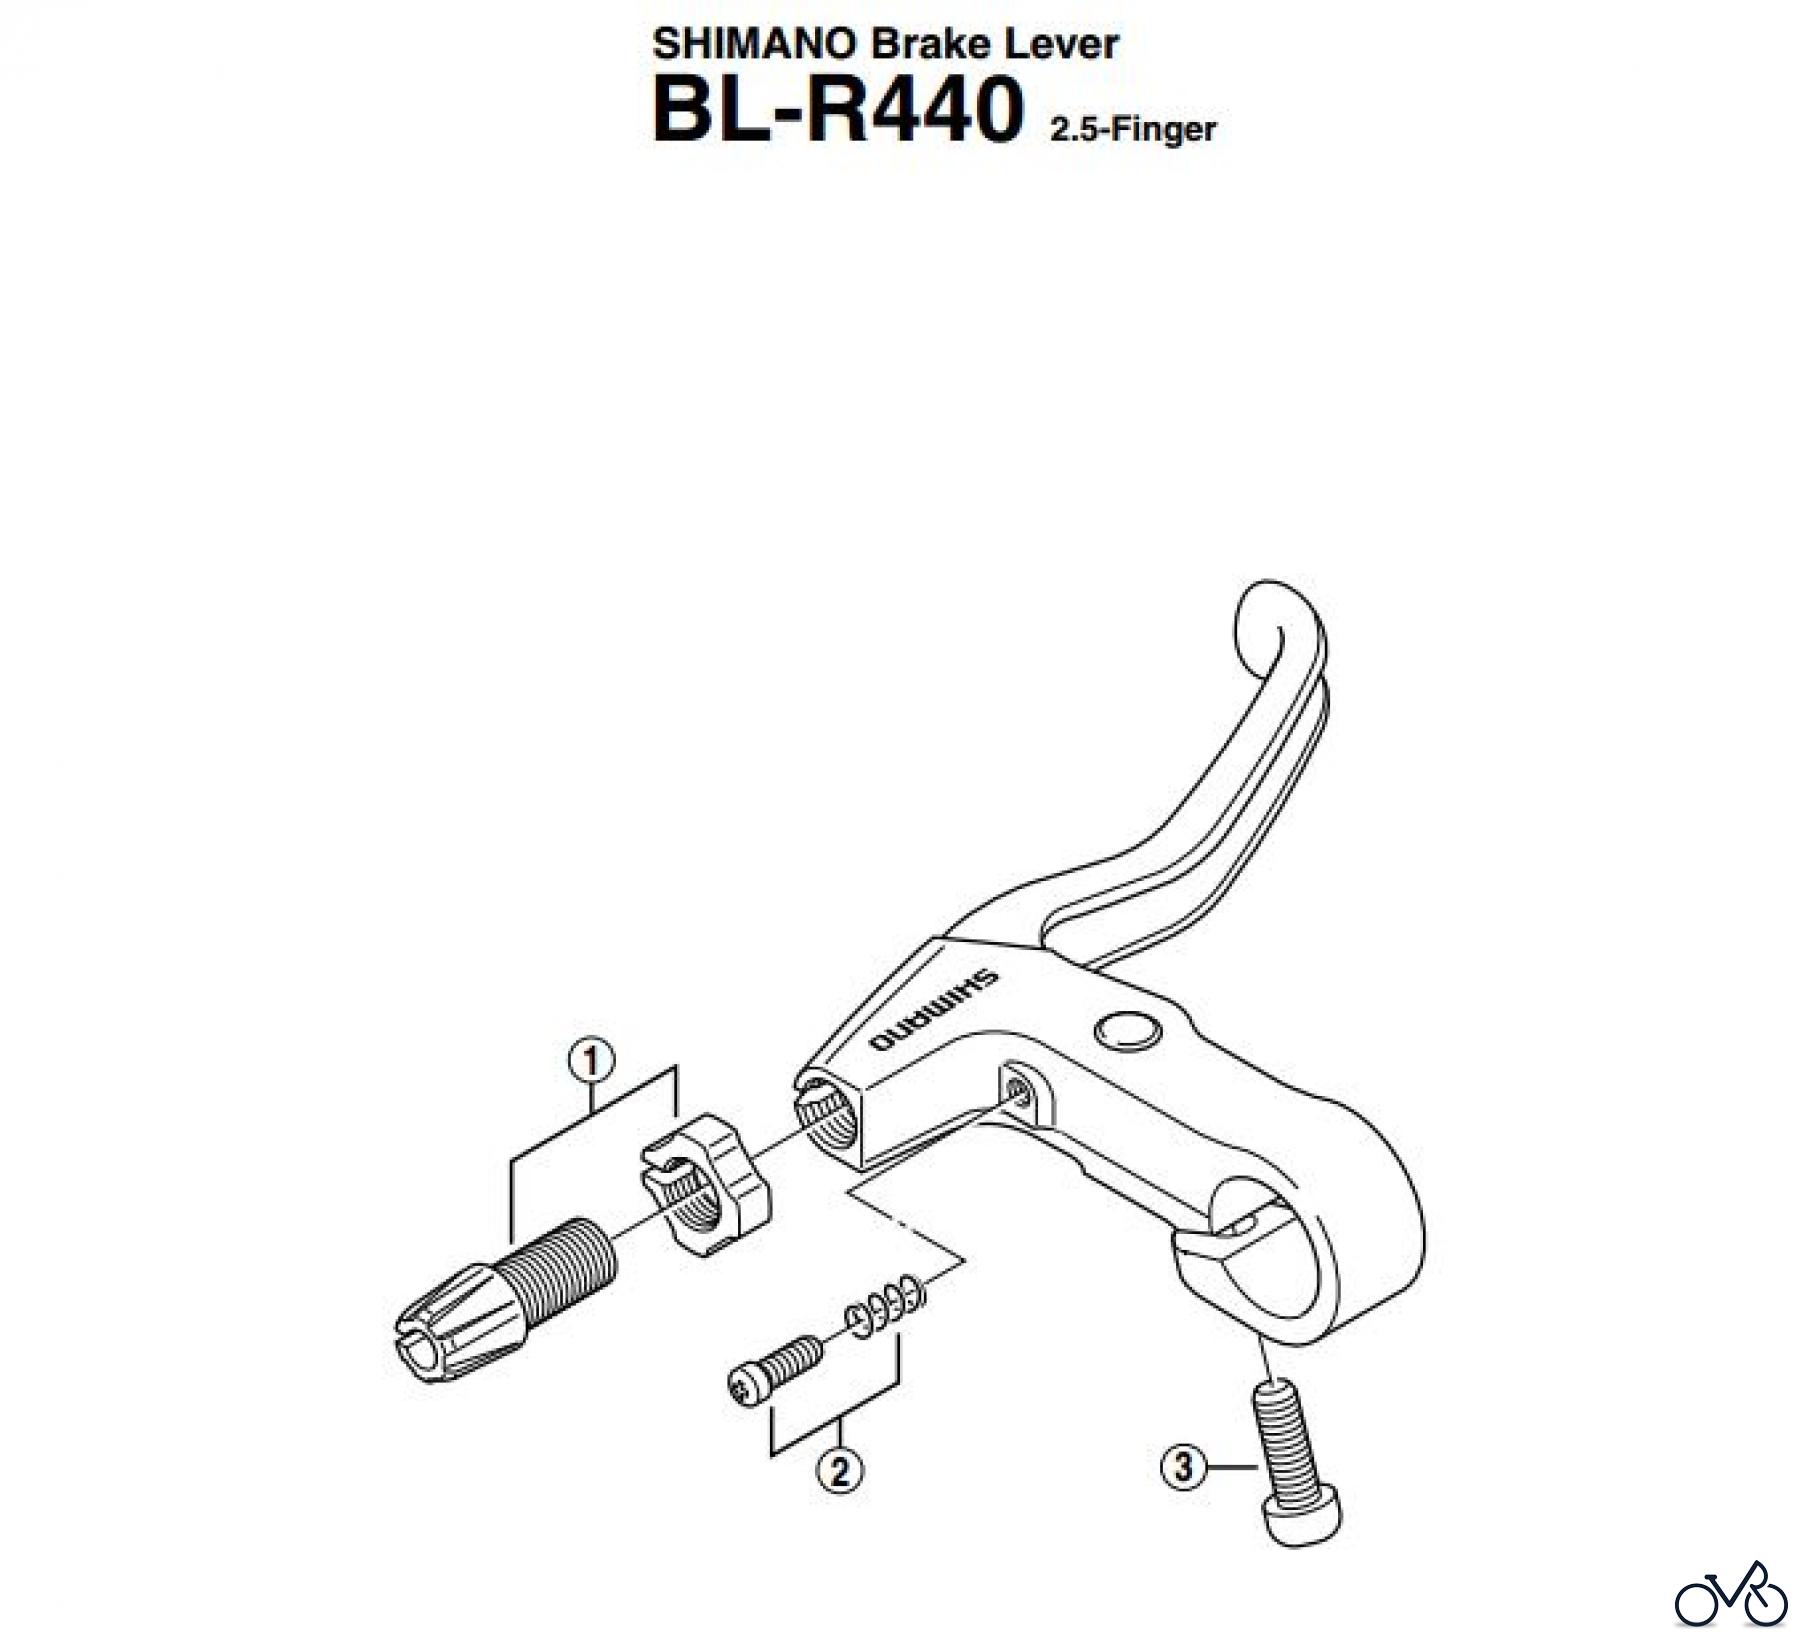  Shimano BL Brake Lever - Bremshebel BLR440